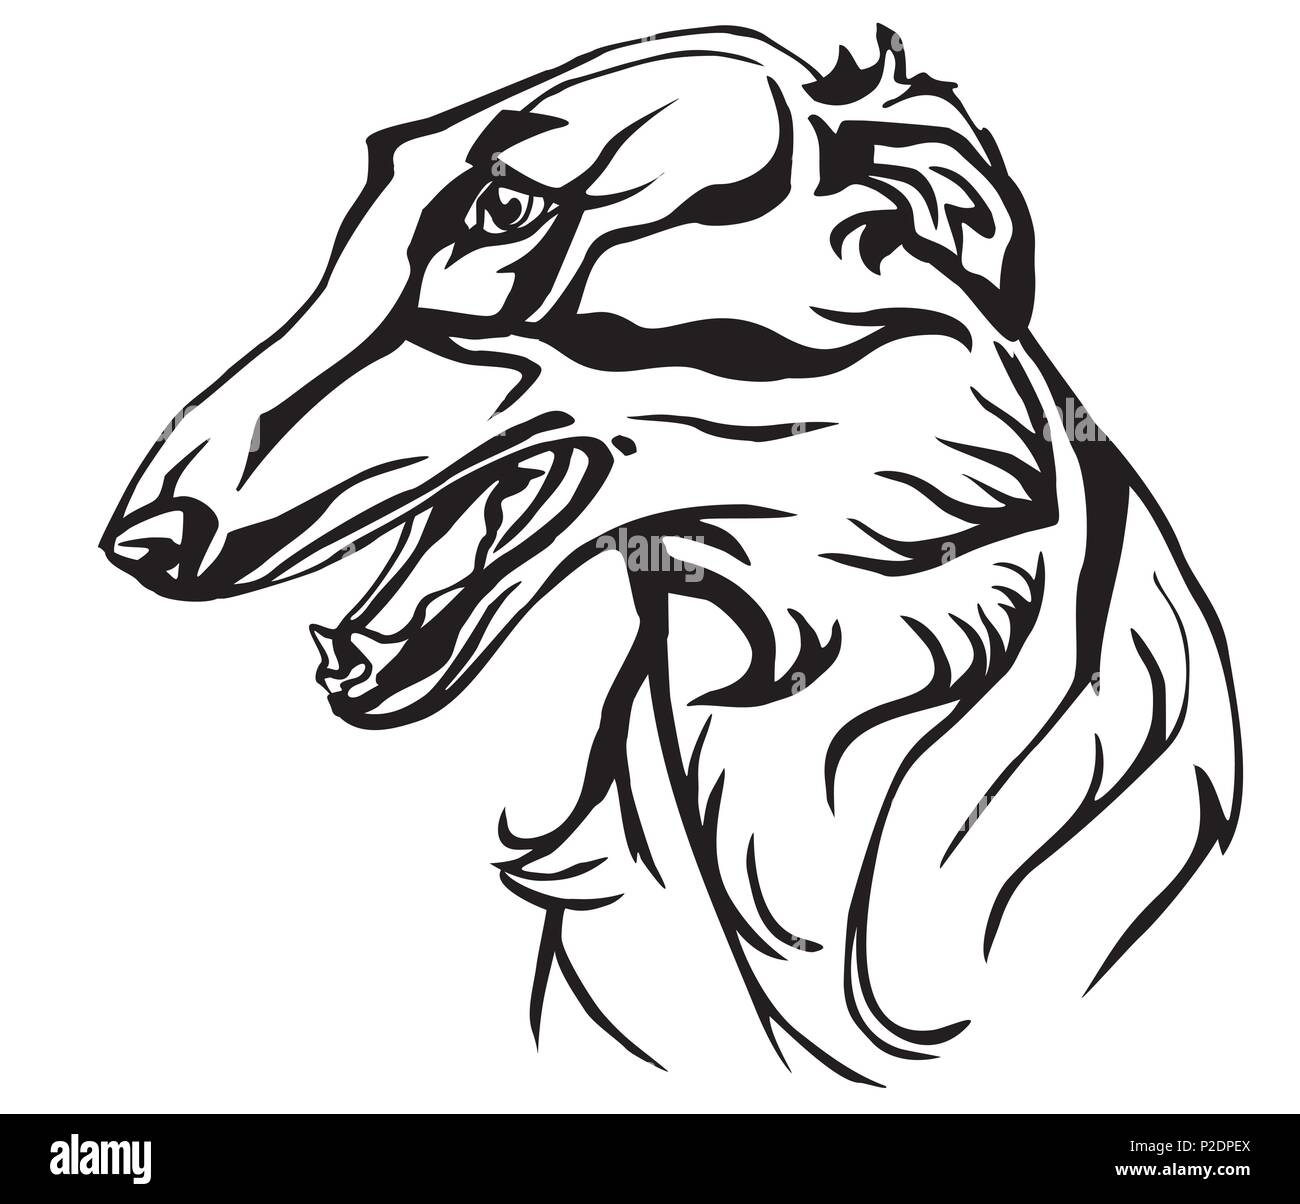 Dekorative Portrait im Profil von Hund Russische Wolfshund, Vektor isoliert Abbildung in schwarz auf weißem Hintergrund Stock Vektor